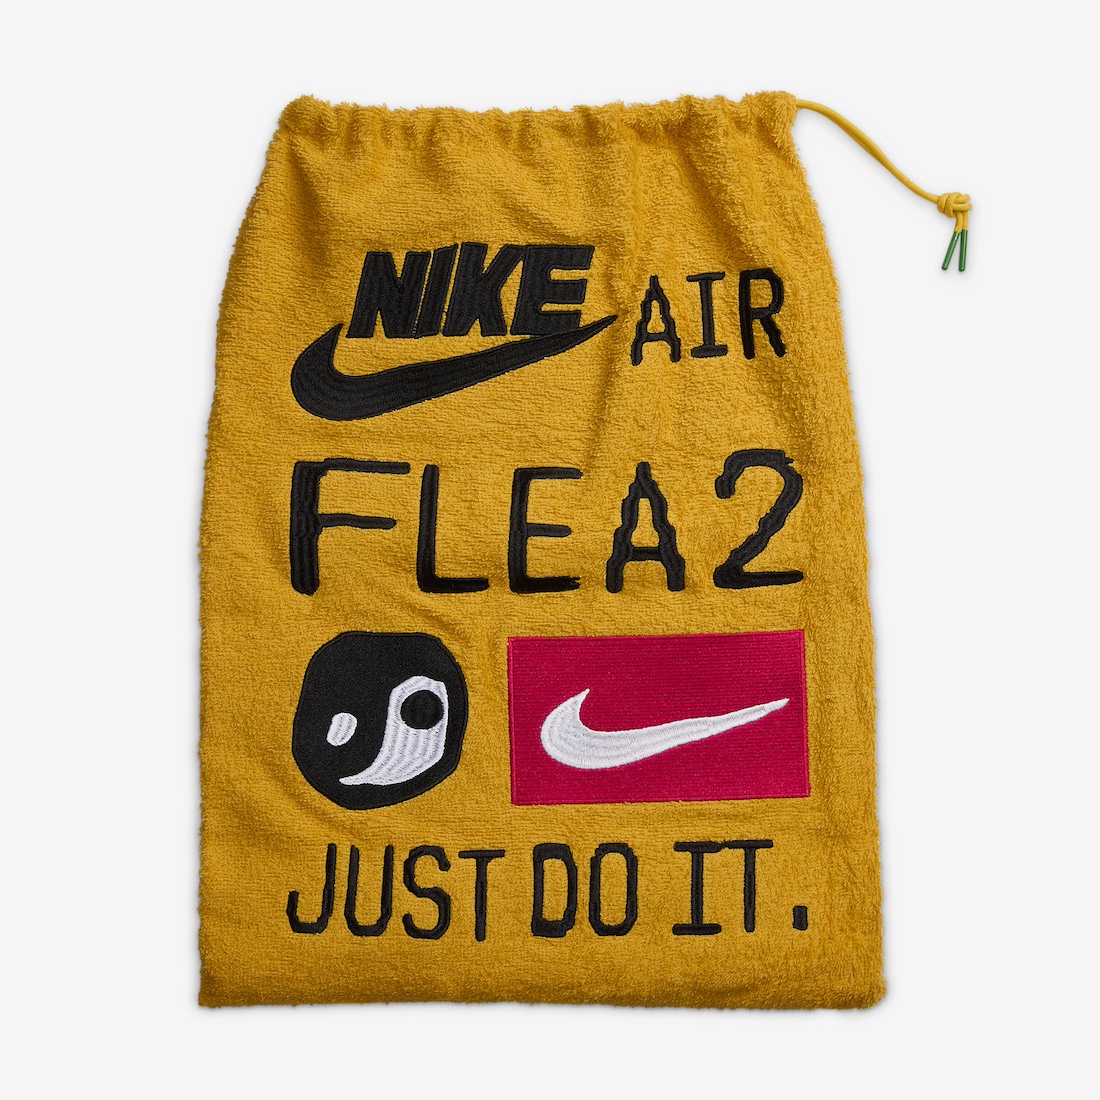 Nike CPFM Air Flea 2 Faded Spruce DV7164 300 Release Date 15